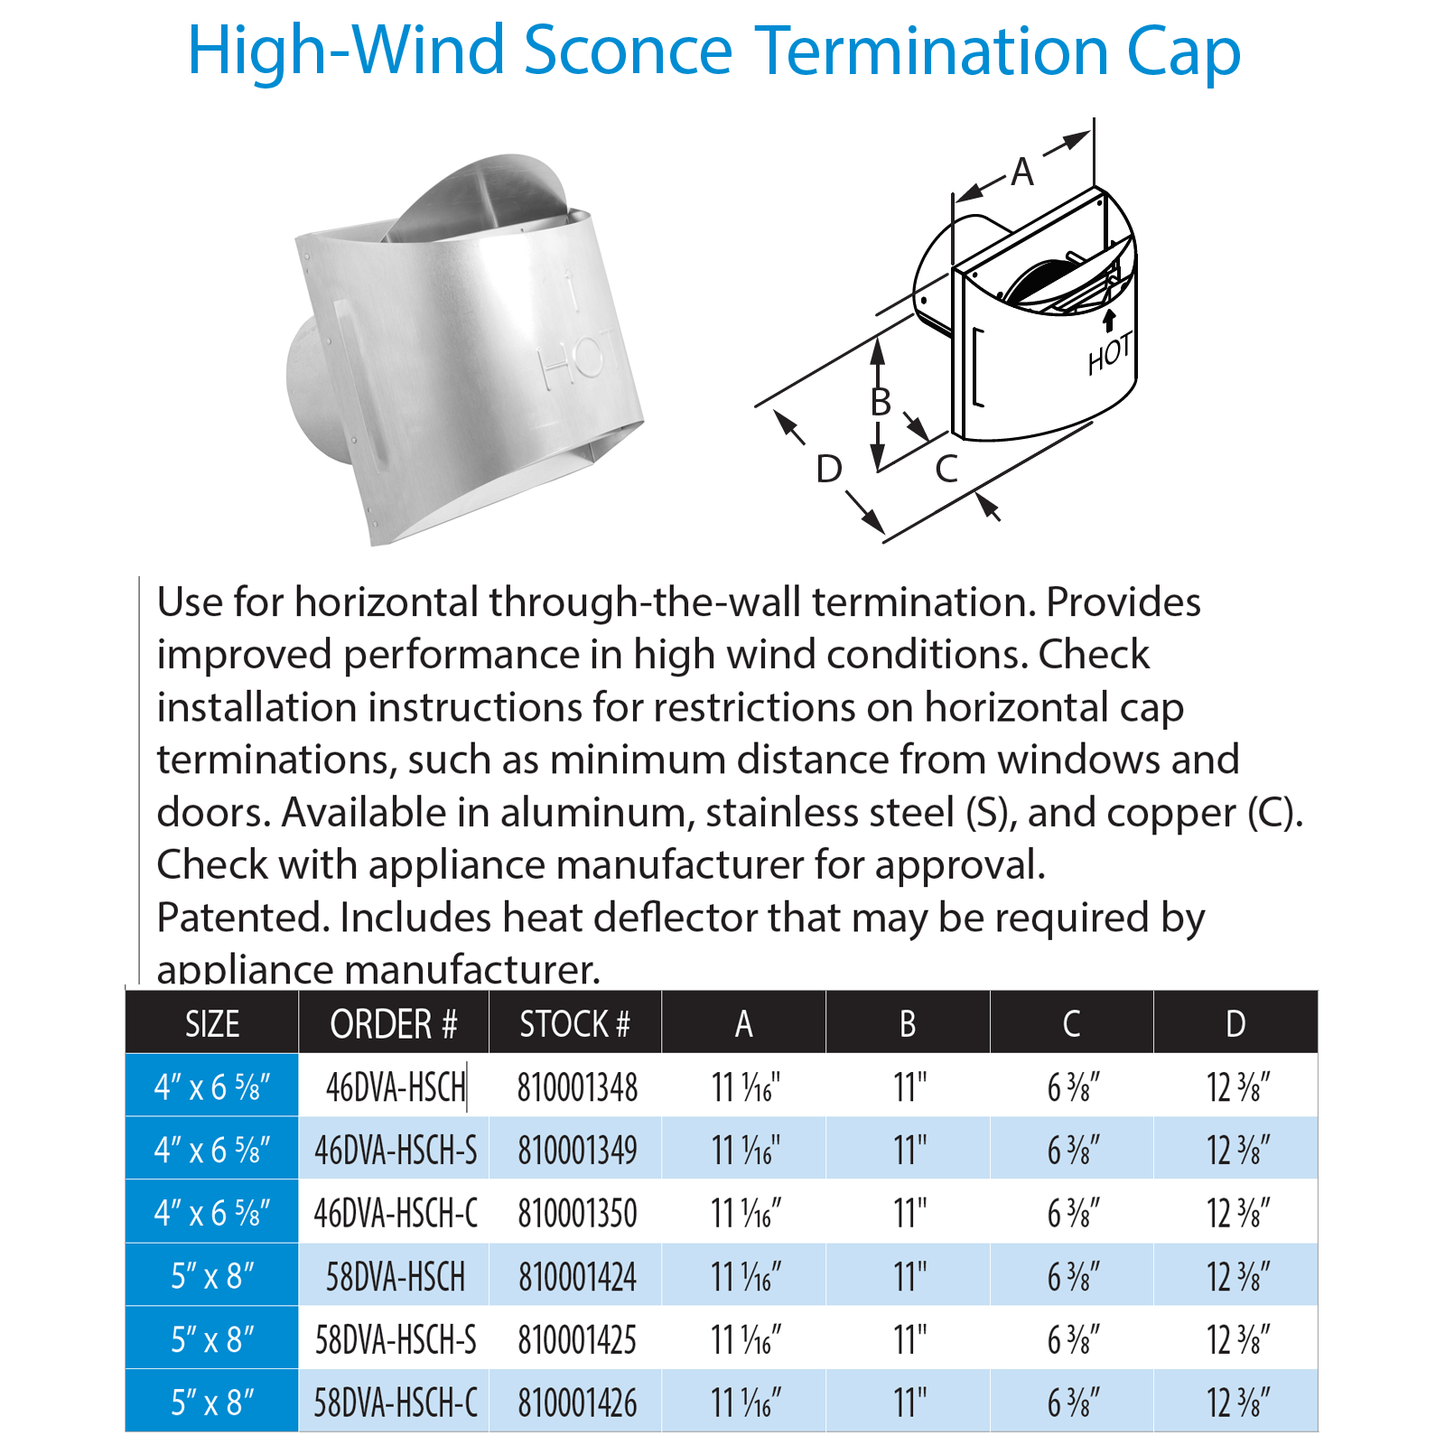 DuraVent DirectVent Pro High Wind Sconce Term Cap | 58DVA-HSCH